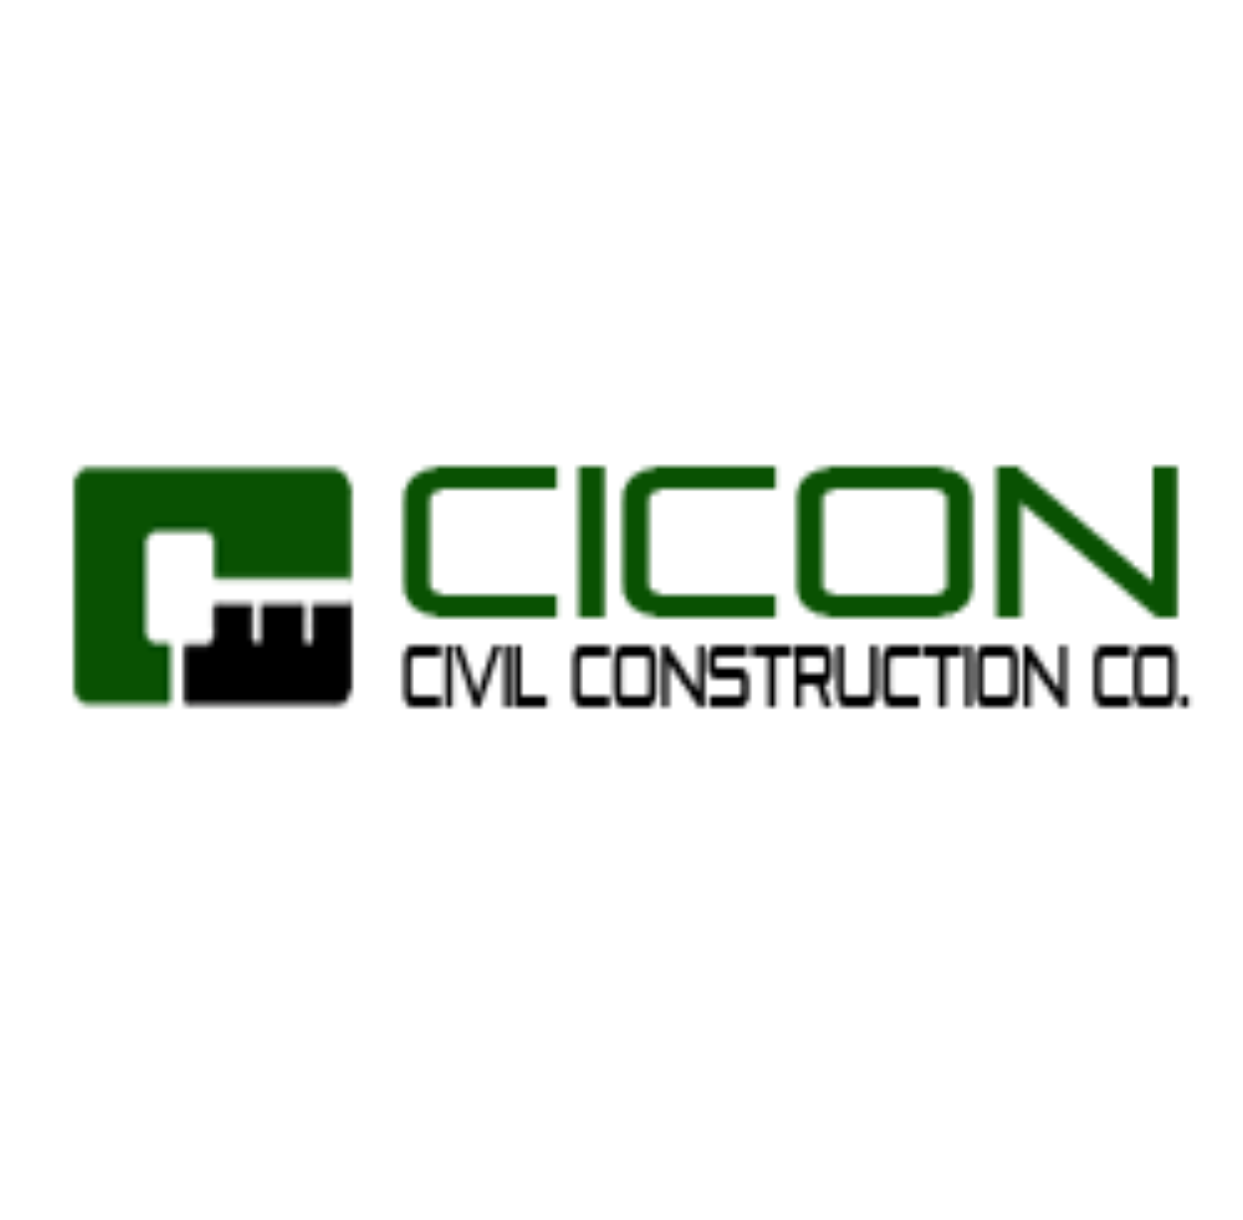 Cicon Civil construction